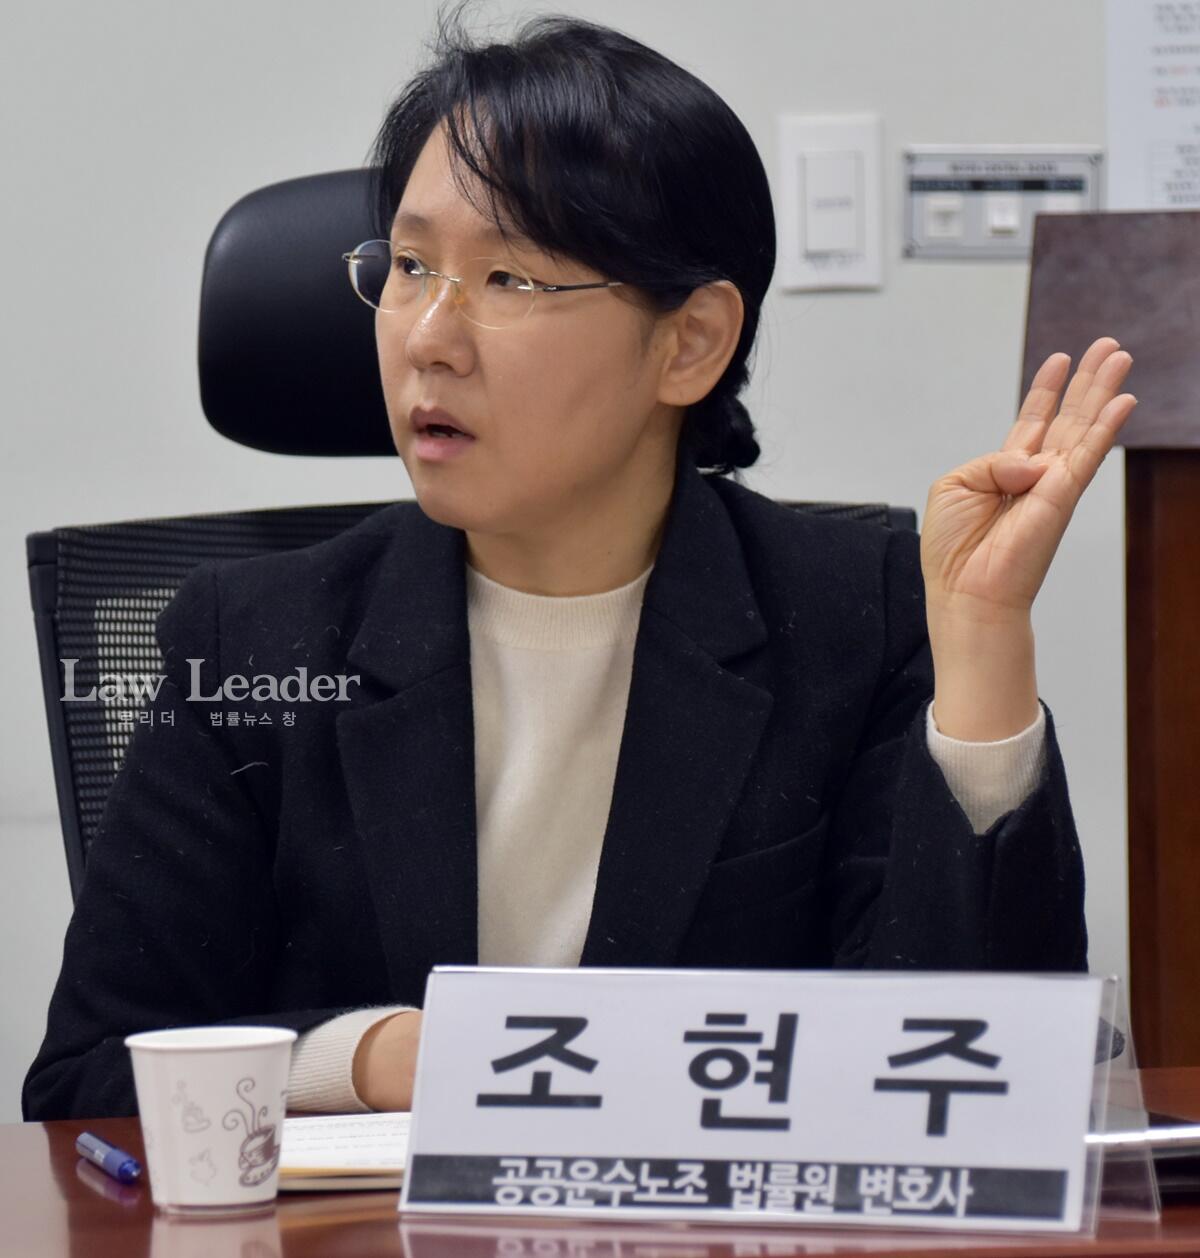 공공운수노조 법률원에서 활동하는 조현주 변호사